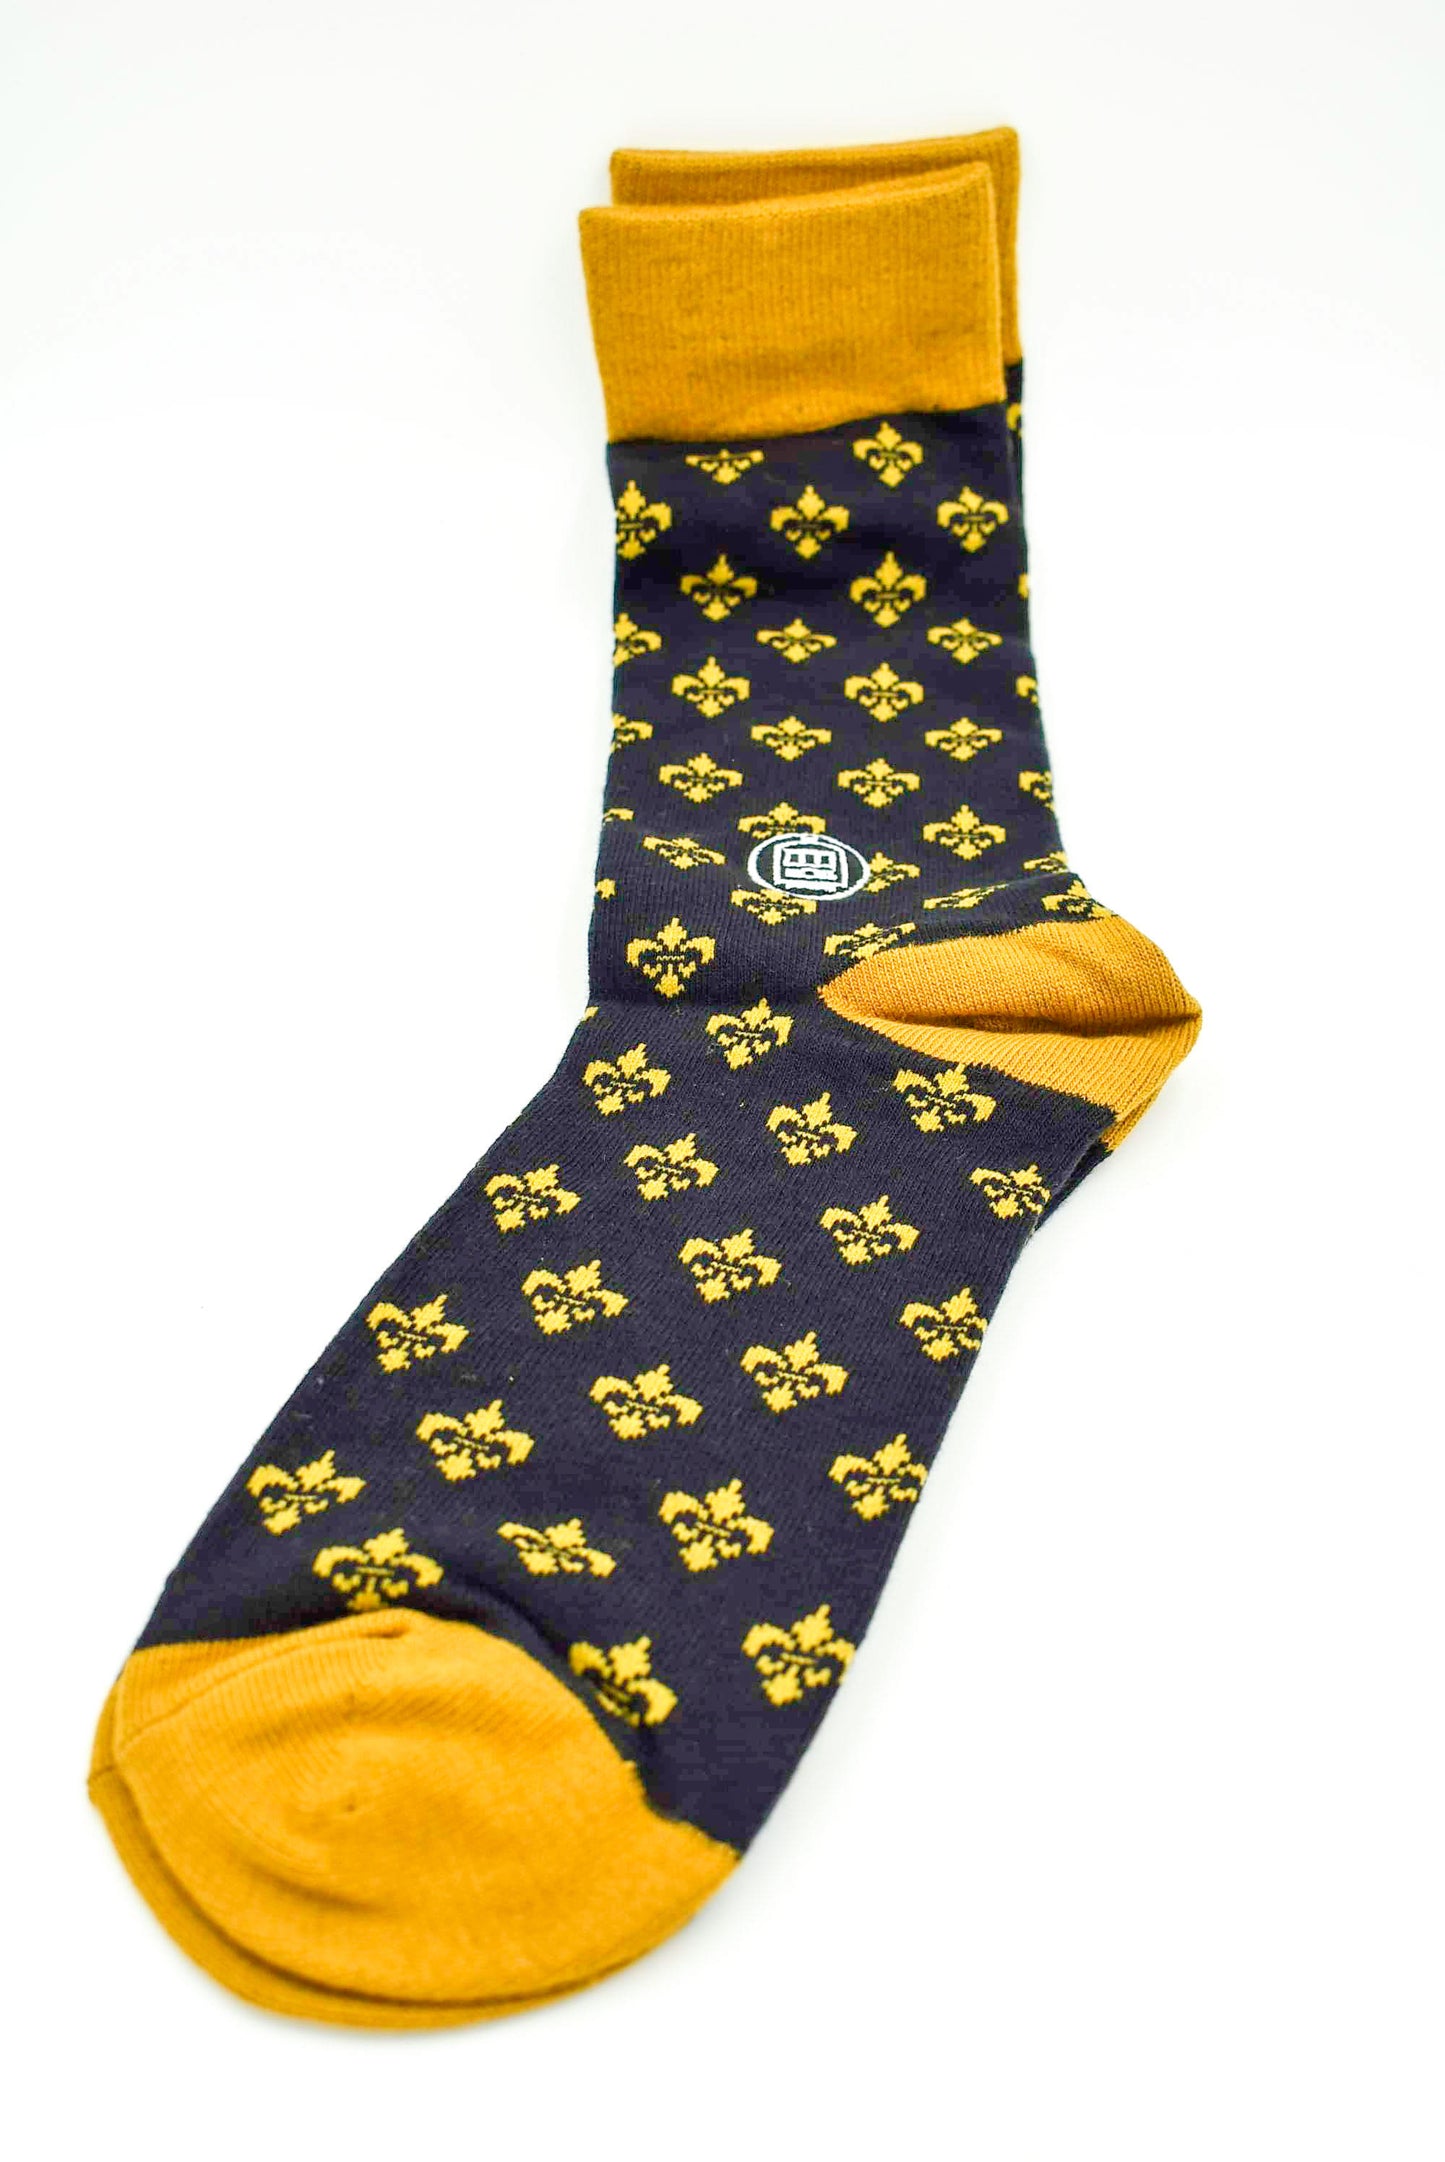 Black & Gold Socks Fleur De Lis Design Unisex Made in New Orleans